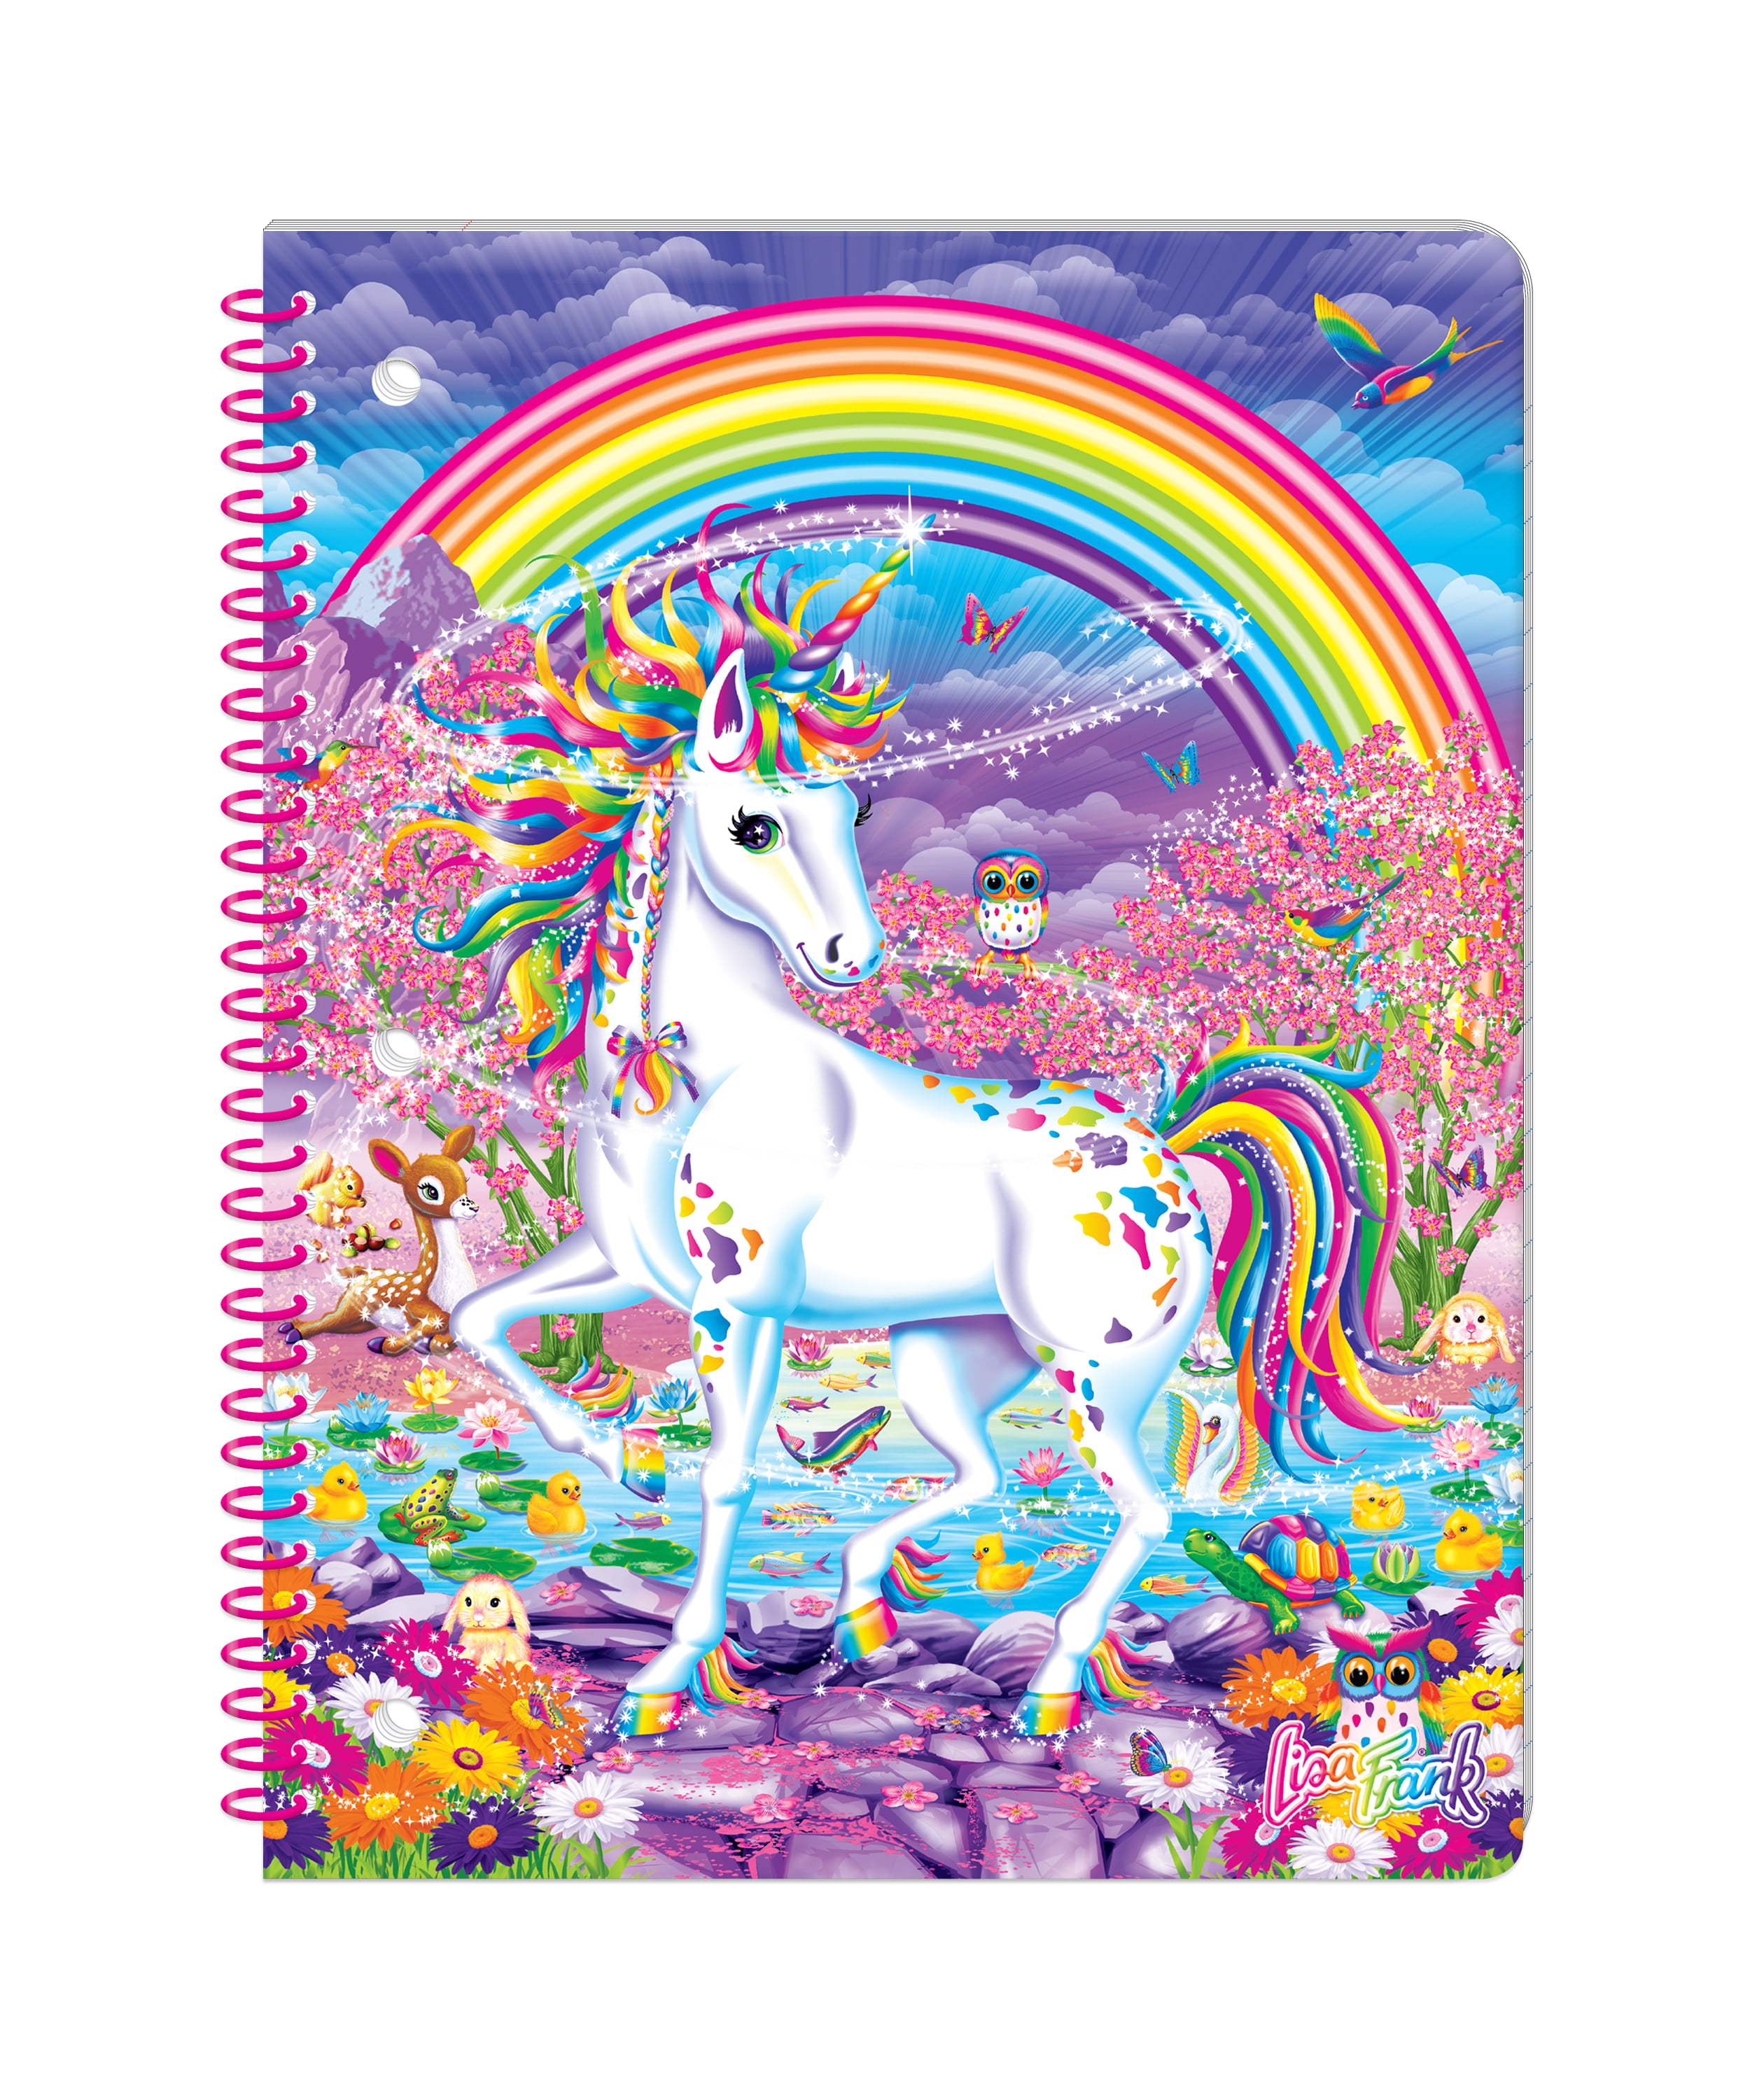 Lisa Frank Folder and Notebook Paper Hunter Zebra Print Rainbow Notebook  Note Book Rainbow School Supplies Journal To Do list planner